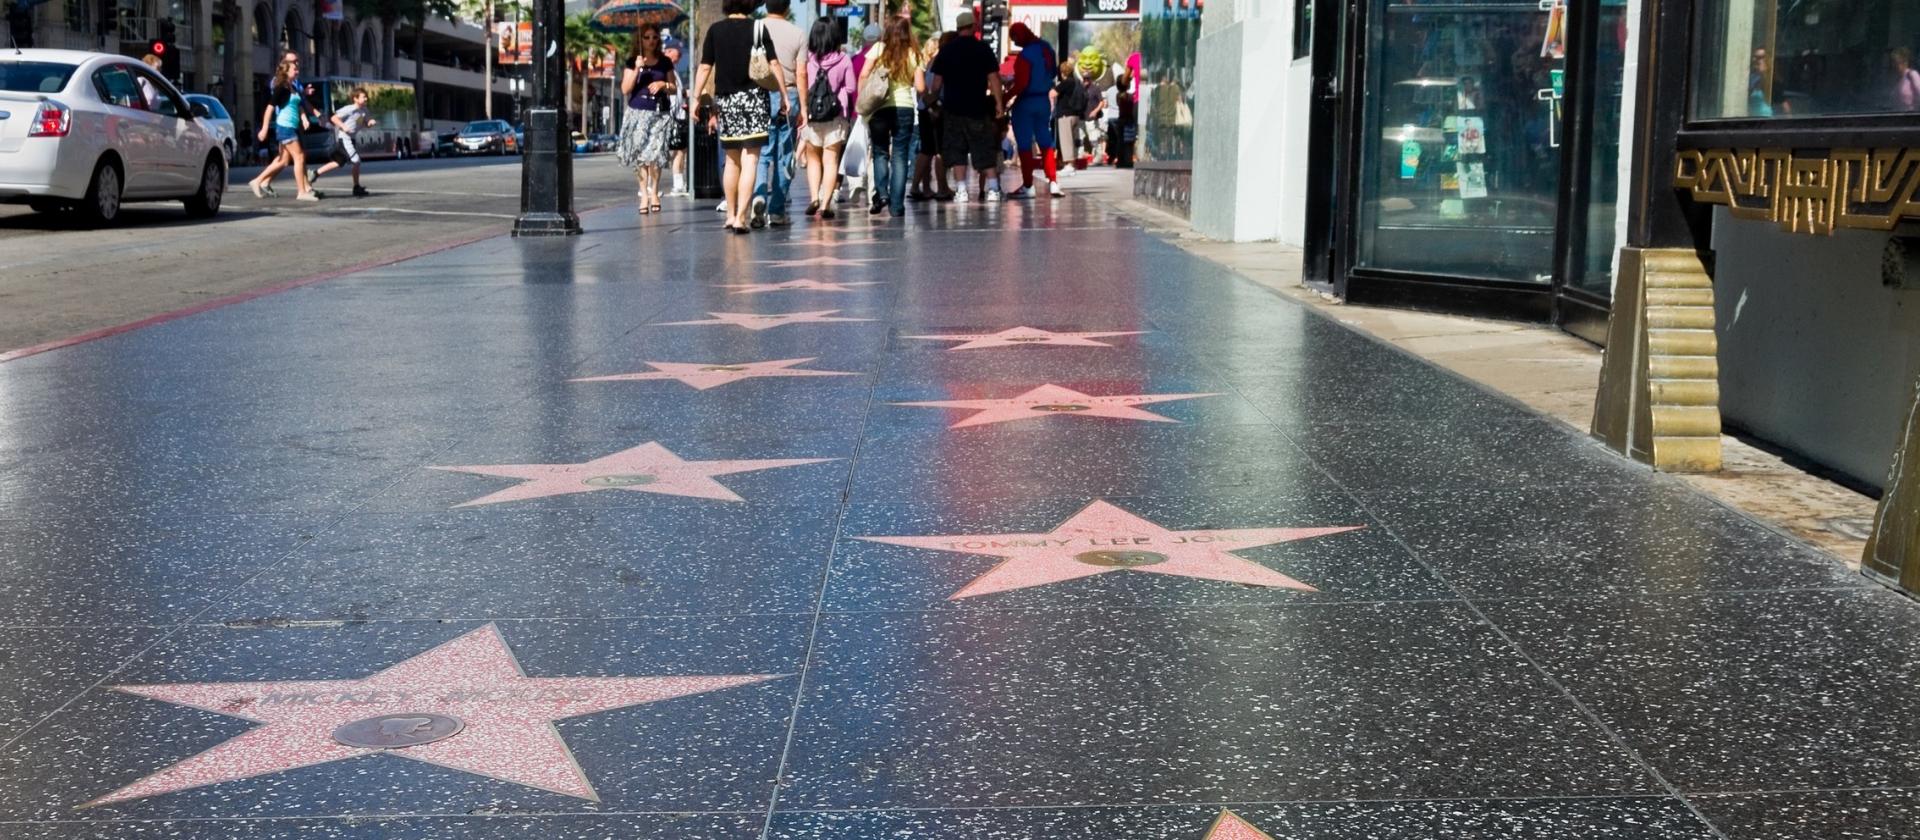 Aleja Gwiazd w Hollywood, Los Angeles, Kalifornia